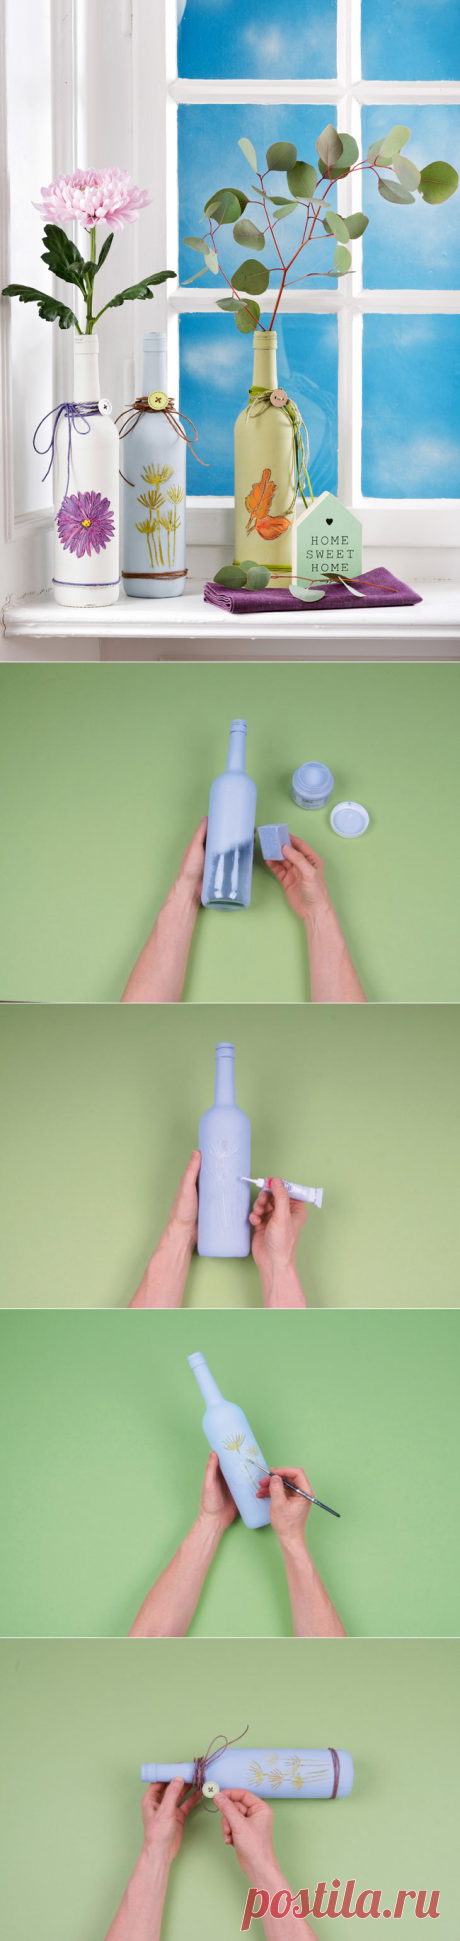 Как сделать вазу из бутылки своими руками